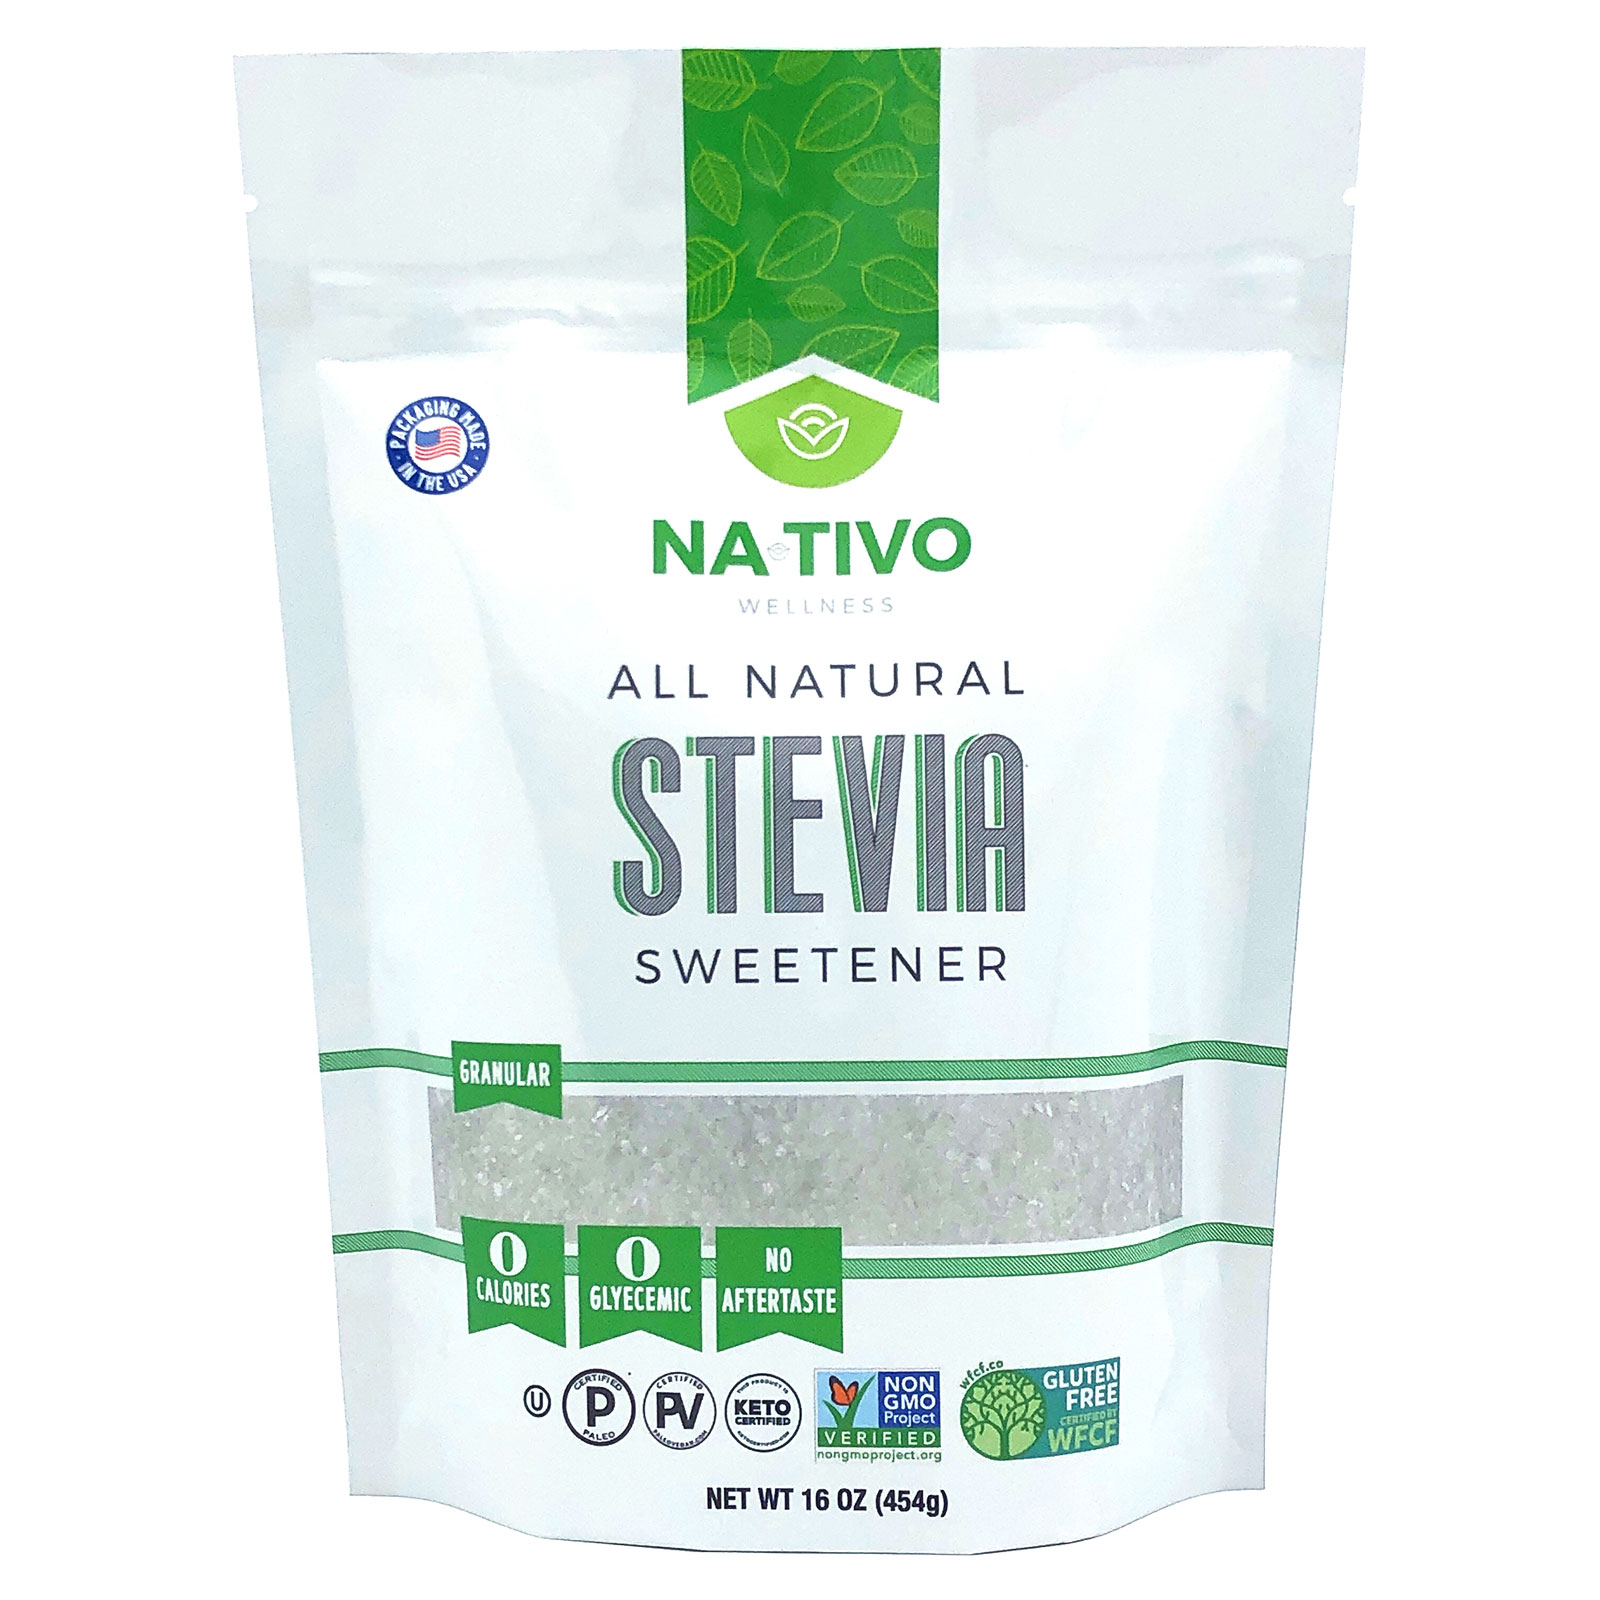 NaTivo All Natural Stevia Sweetener 12 units per case 1.0 lb